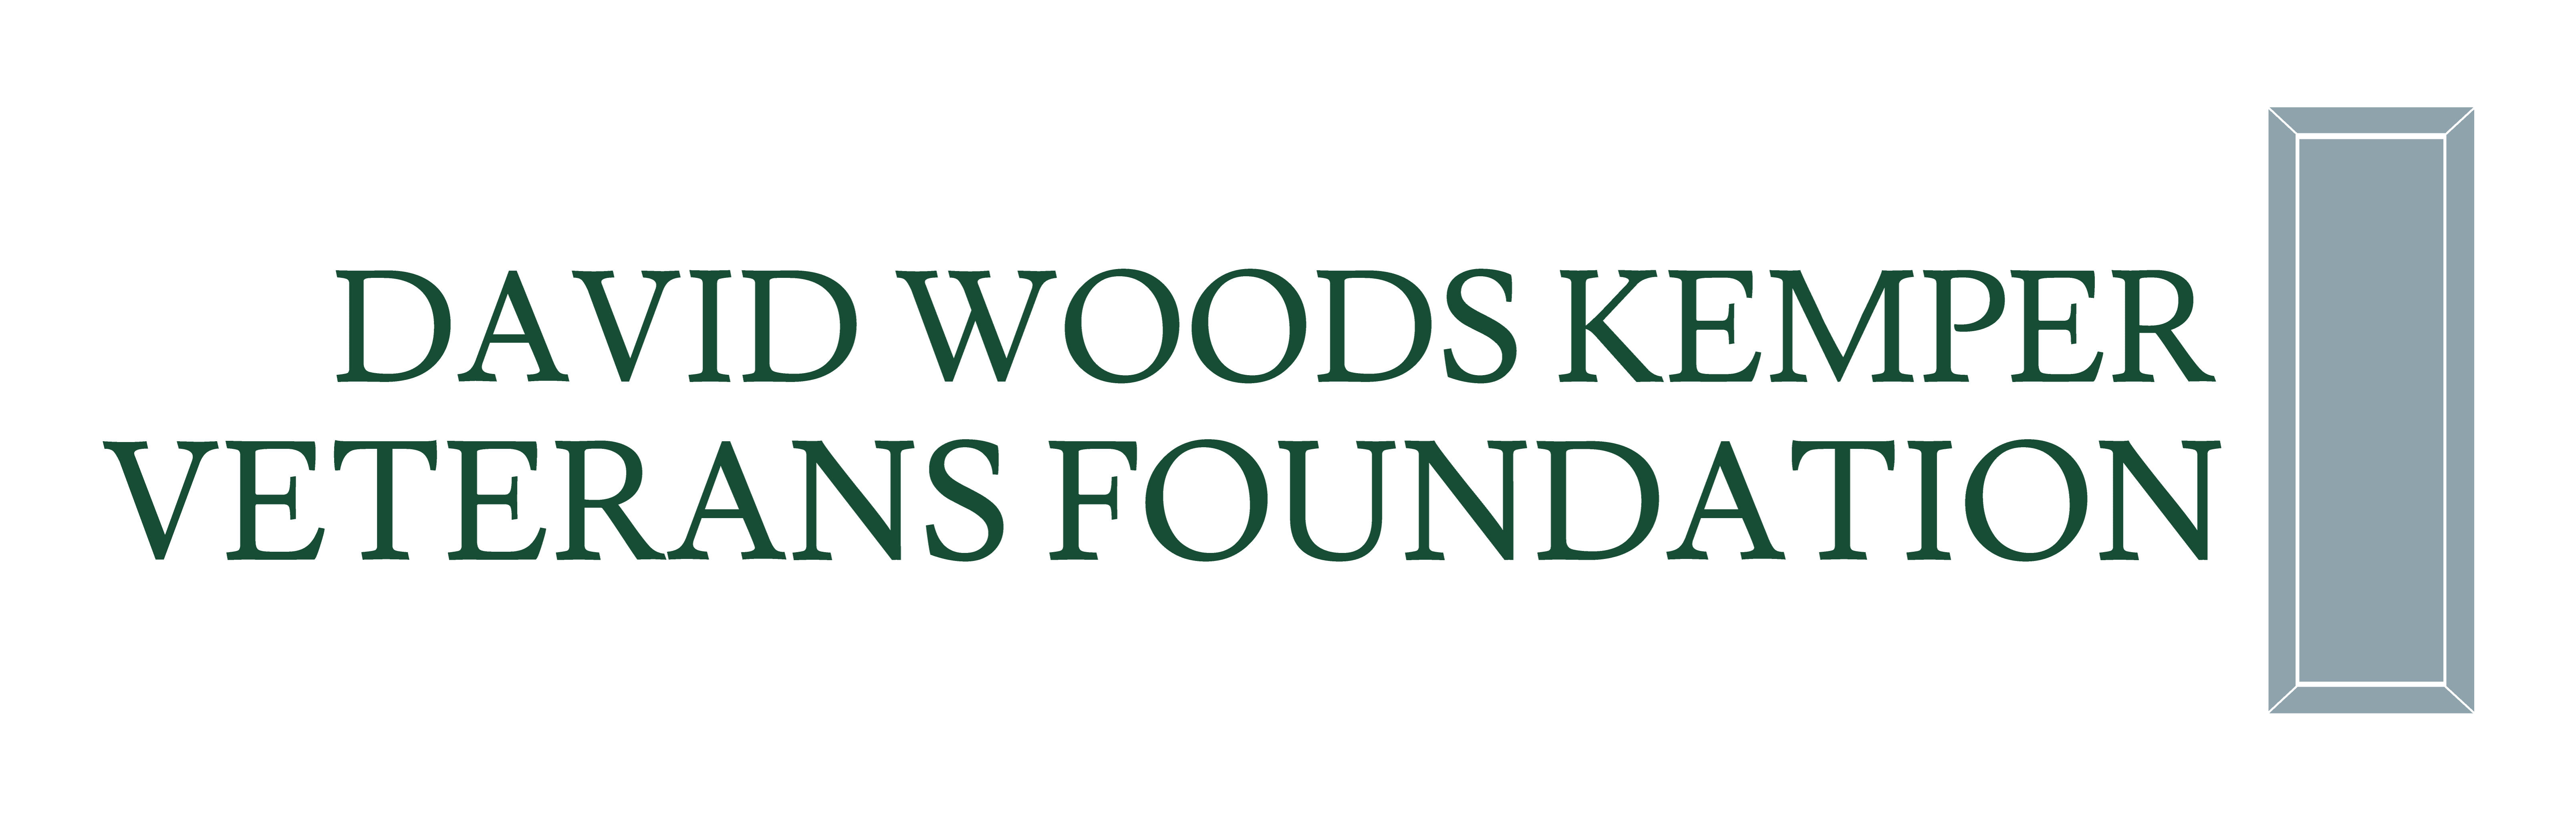 David Woods Kemper Veterans Foundation